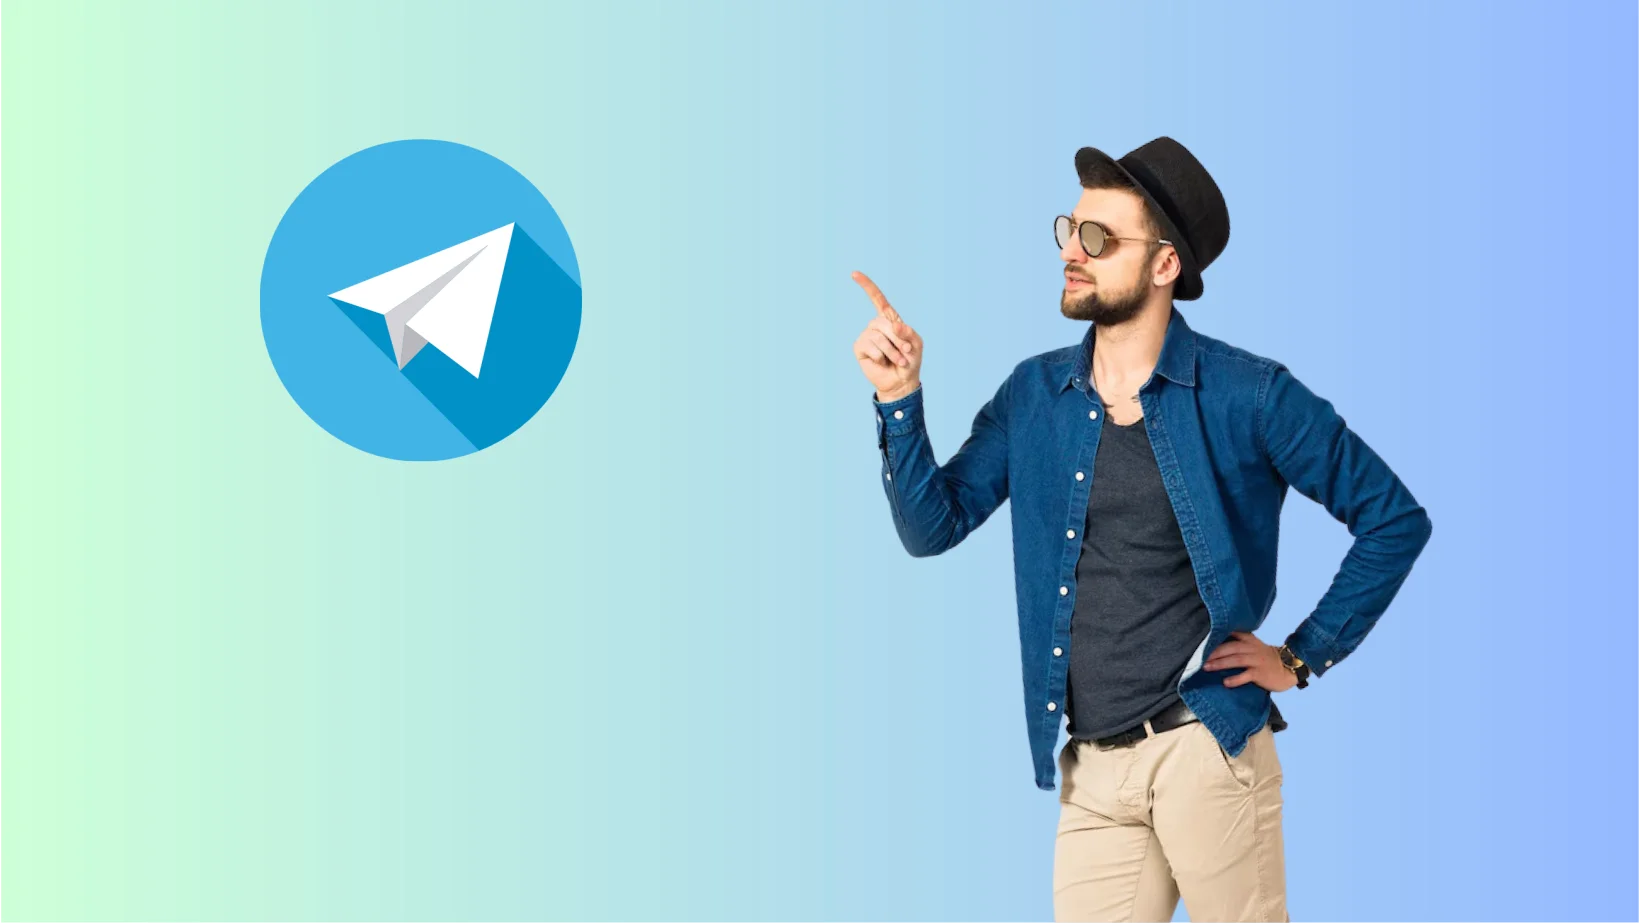 Telegram premium subscription service comes